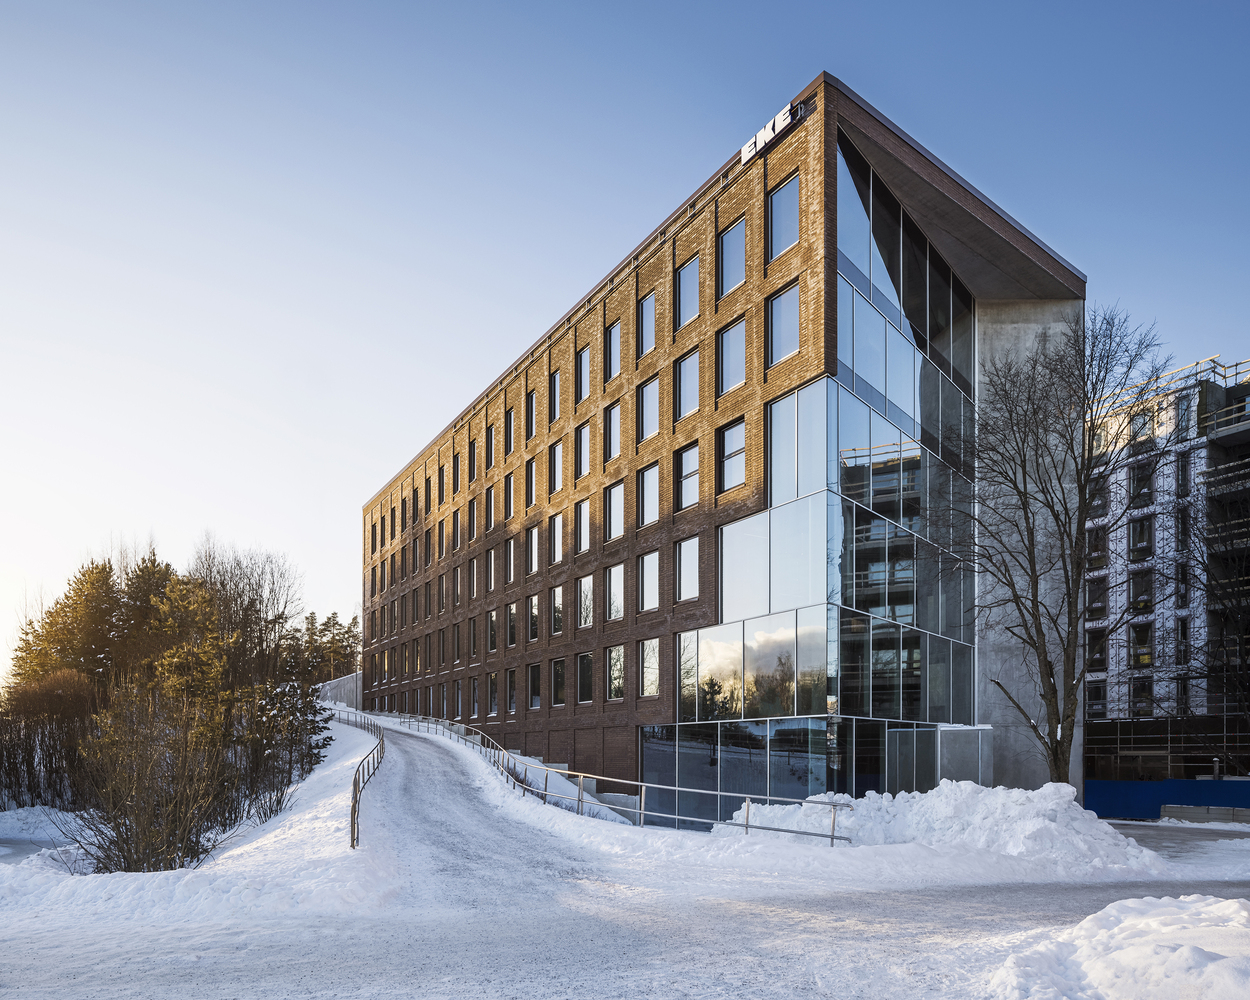 芬兰砖立面办公楼建筑，砖墙的浮雕表面让建筑有了层次感